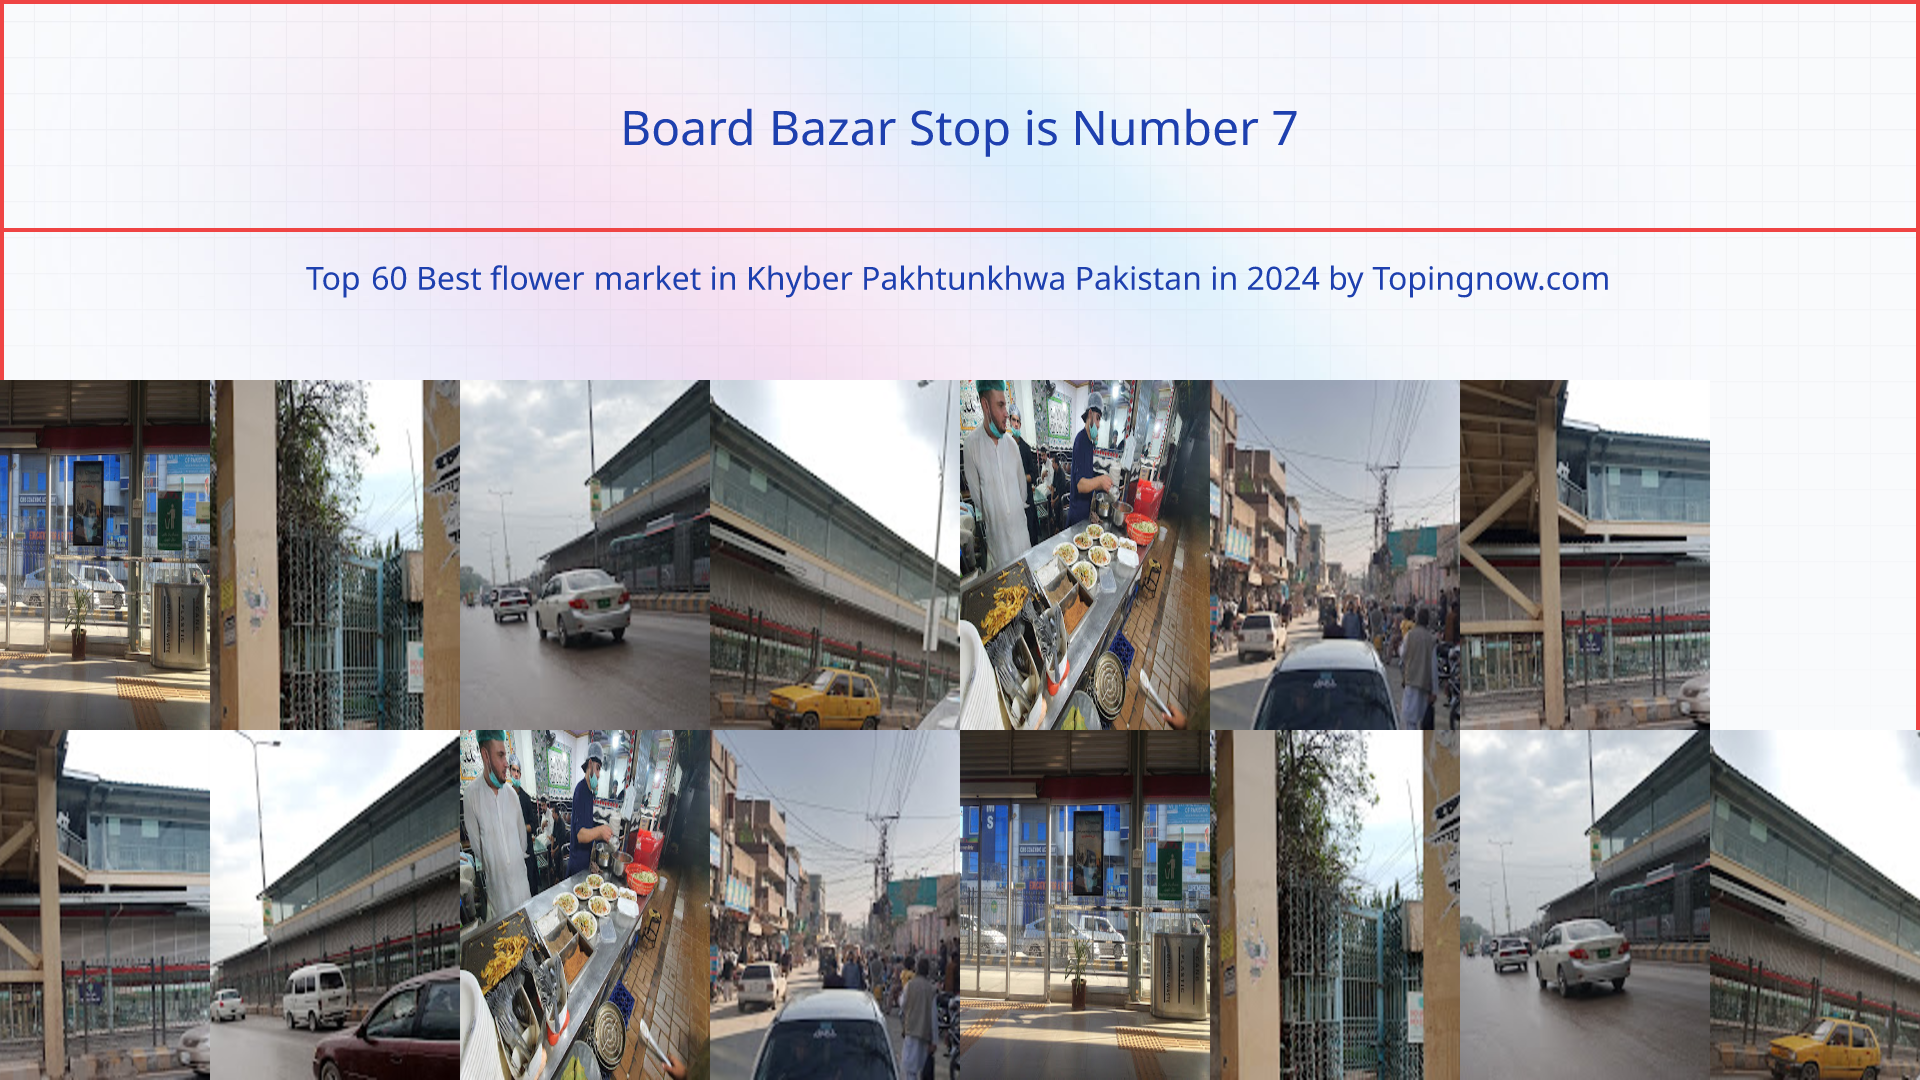 Board Bazar Stop: Top 60 Best flower market in Khyber Pakhtunkhwa Pakistan in 2024